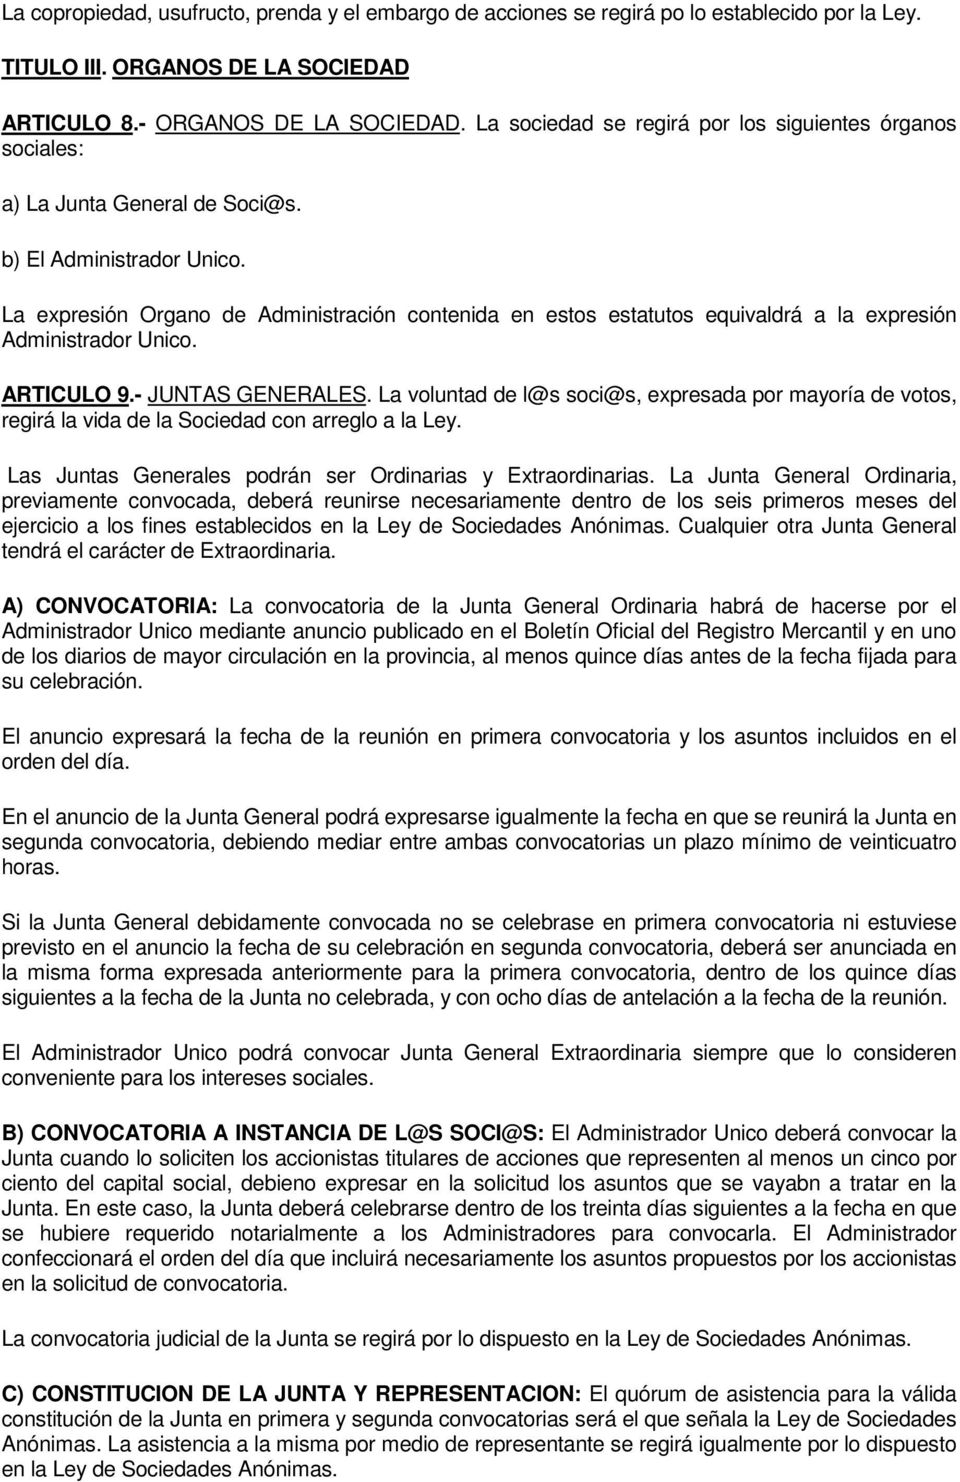 MODELO DE ESTATUTOS DE SOCIEDAD ANONIMA - PDF Free Download